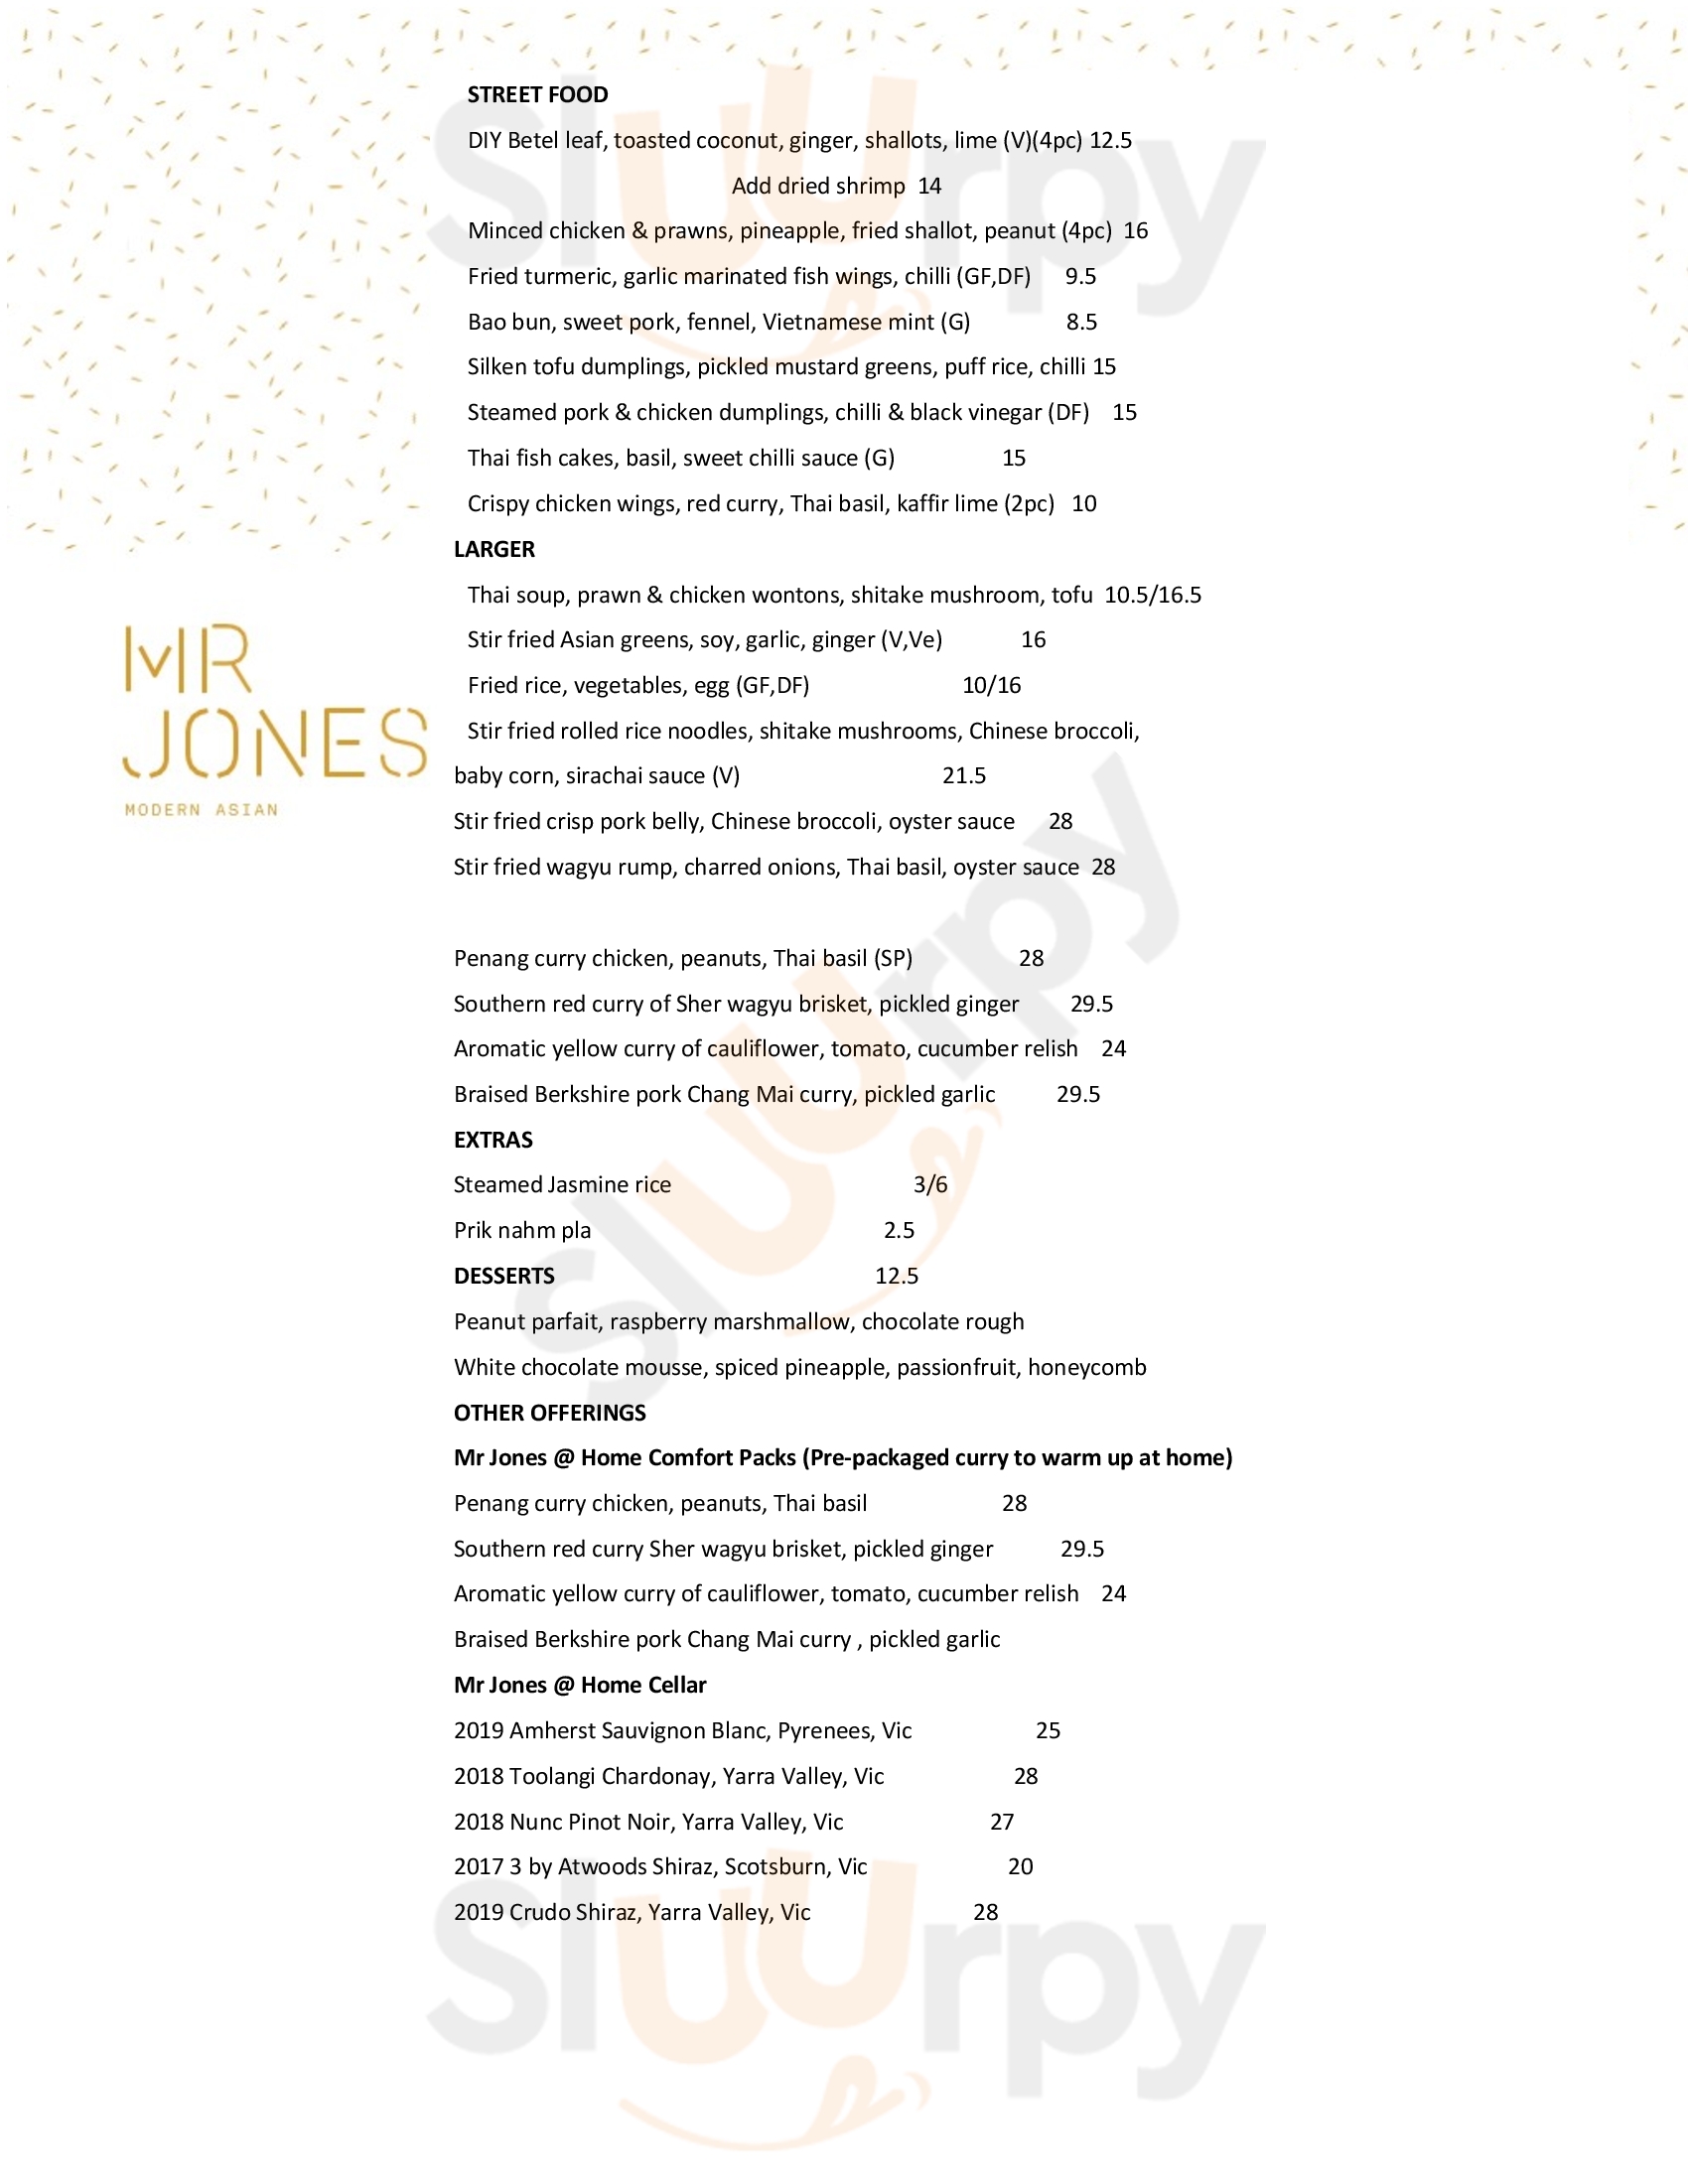 Mr Jones Dining Ballarat Menu - 1